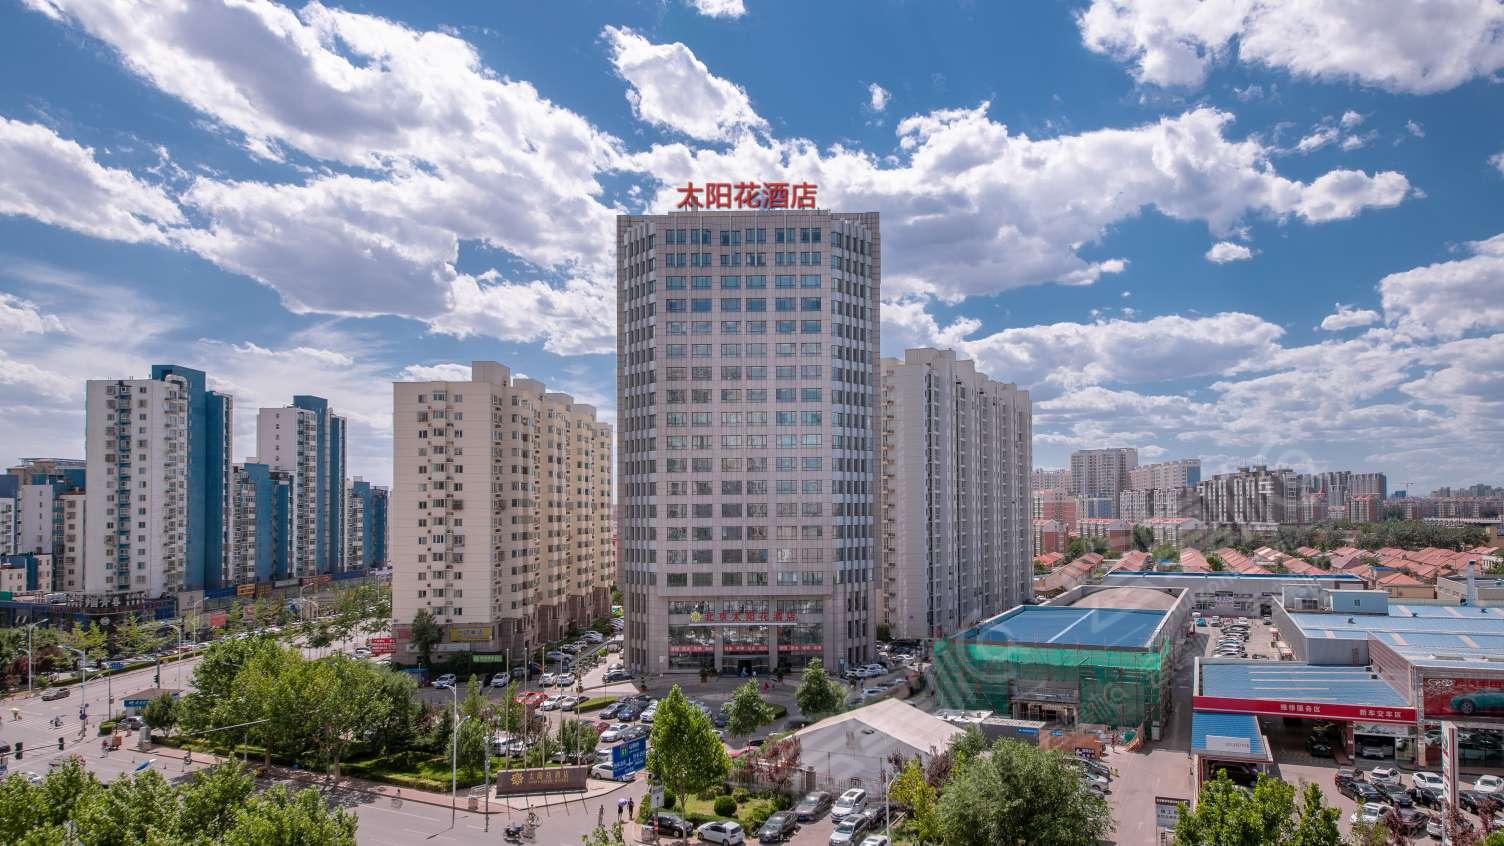 北京太阳花酒店怎么样?北京太阳花酒店联系方式?